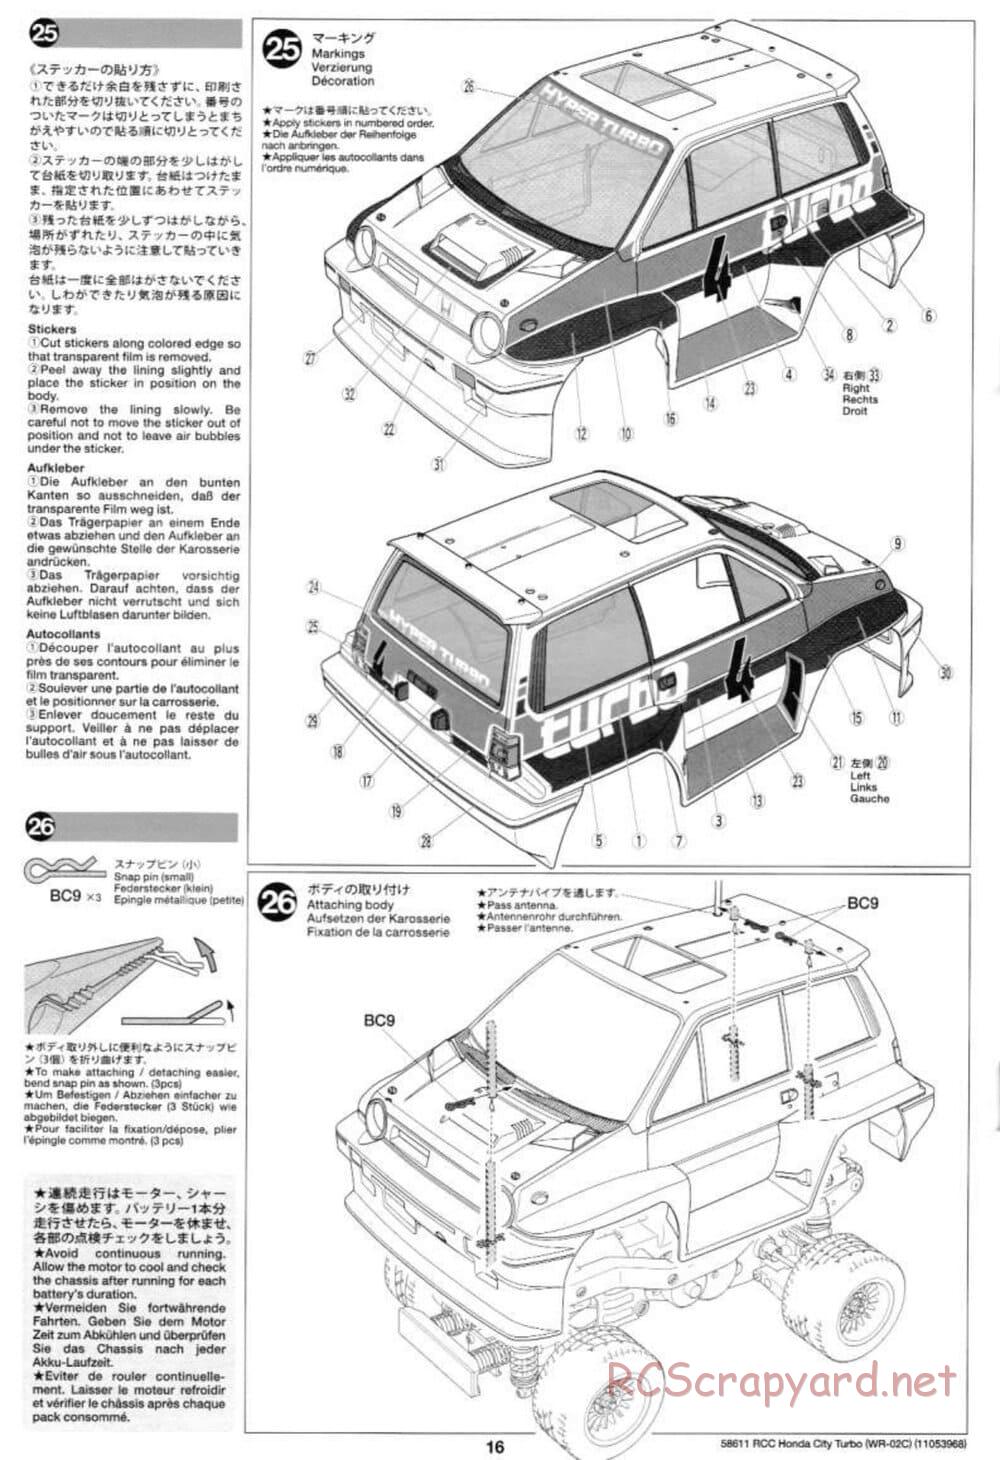 Tamiya - Honda City Turbo - WR-02C Chassis - Manual - Page 16